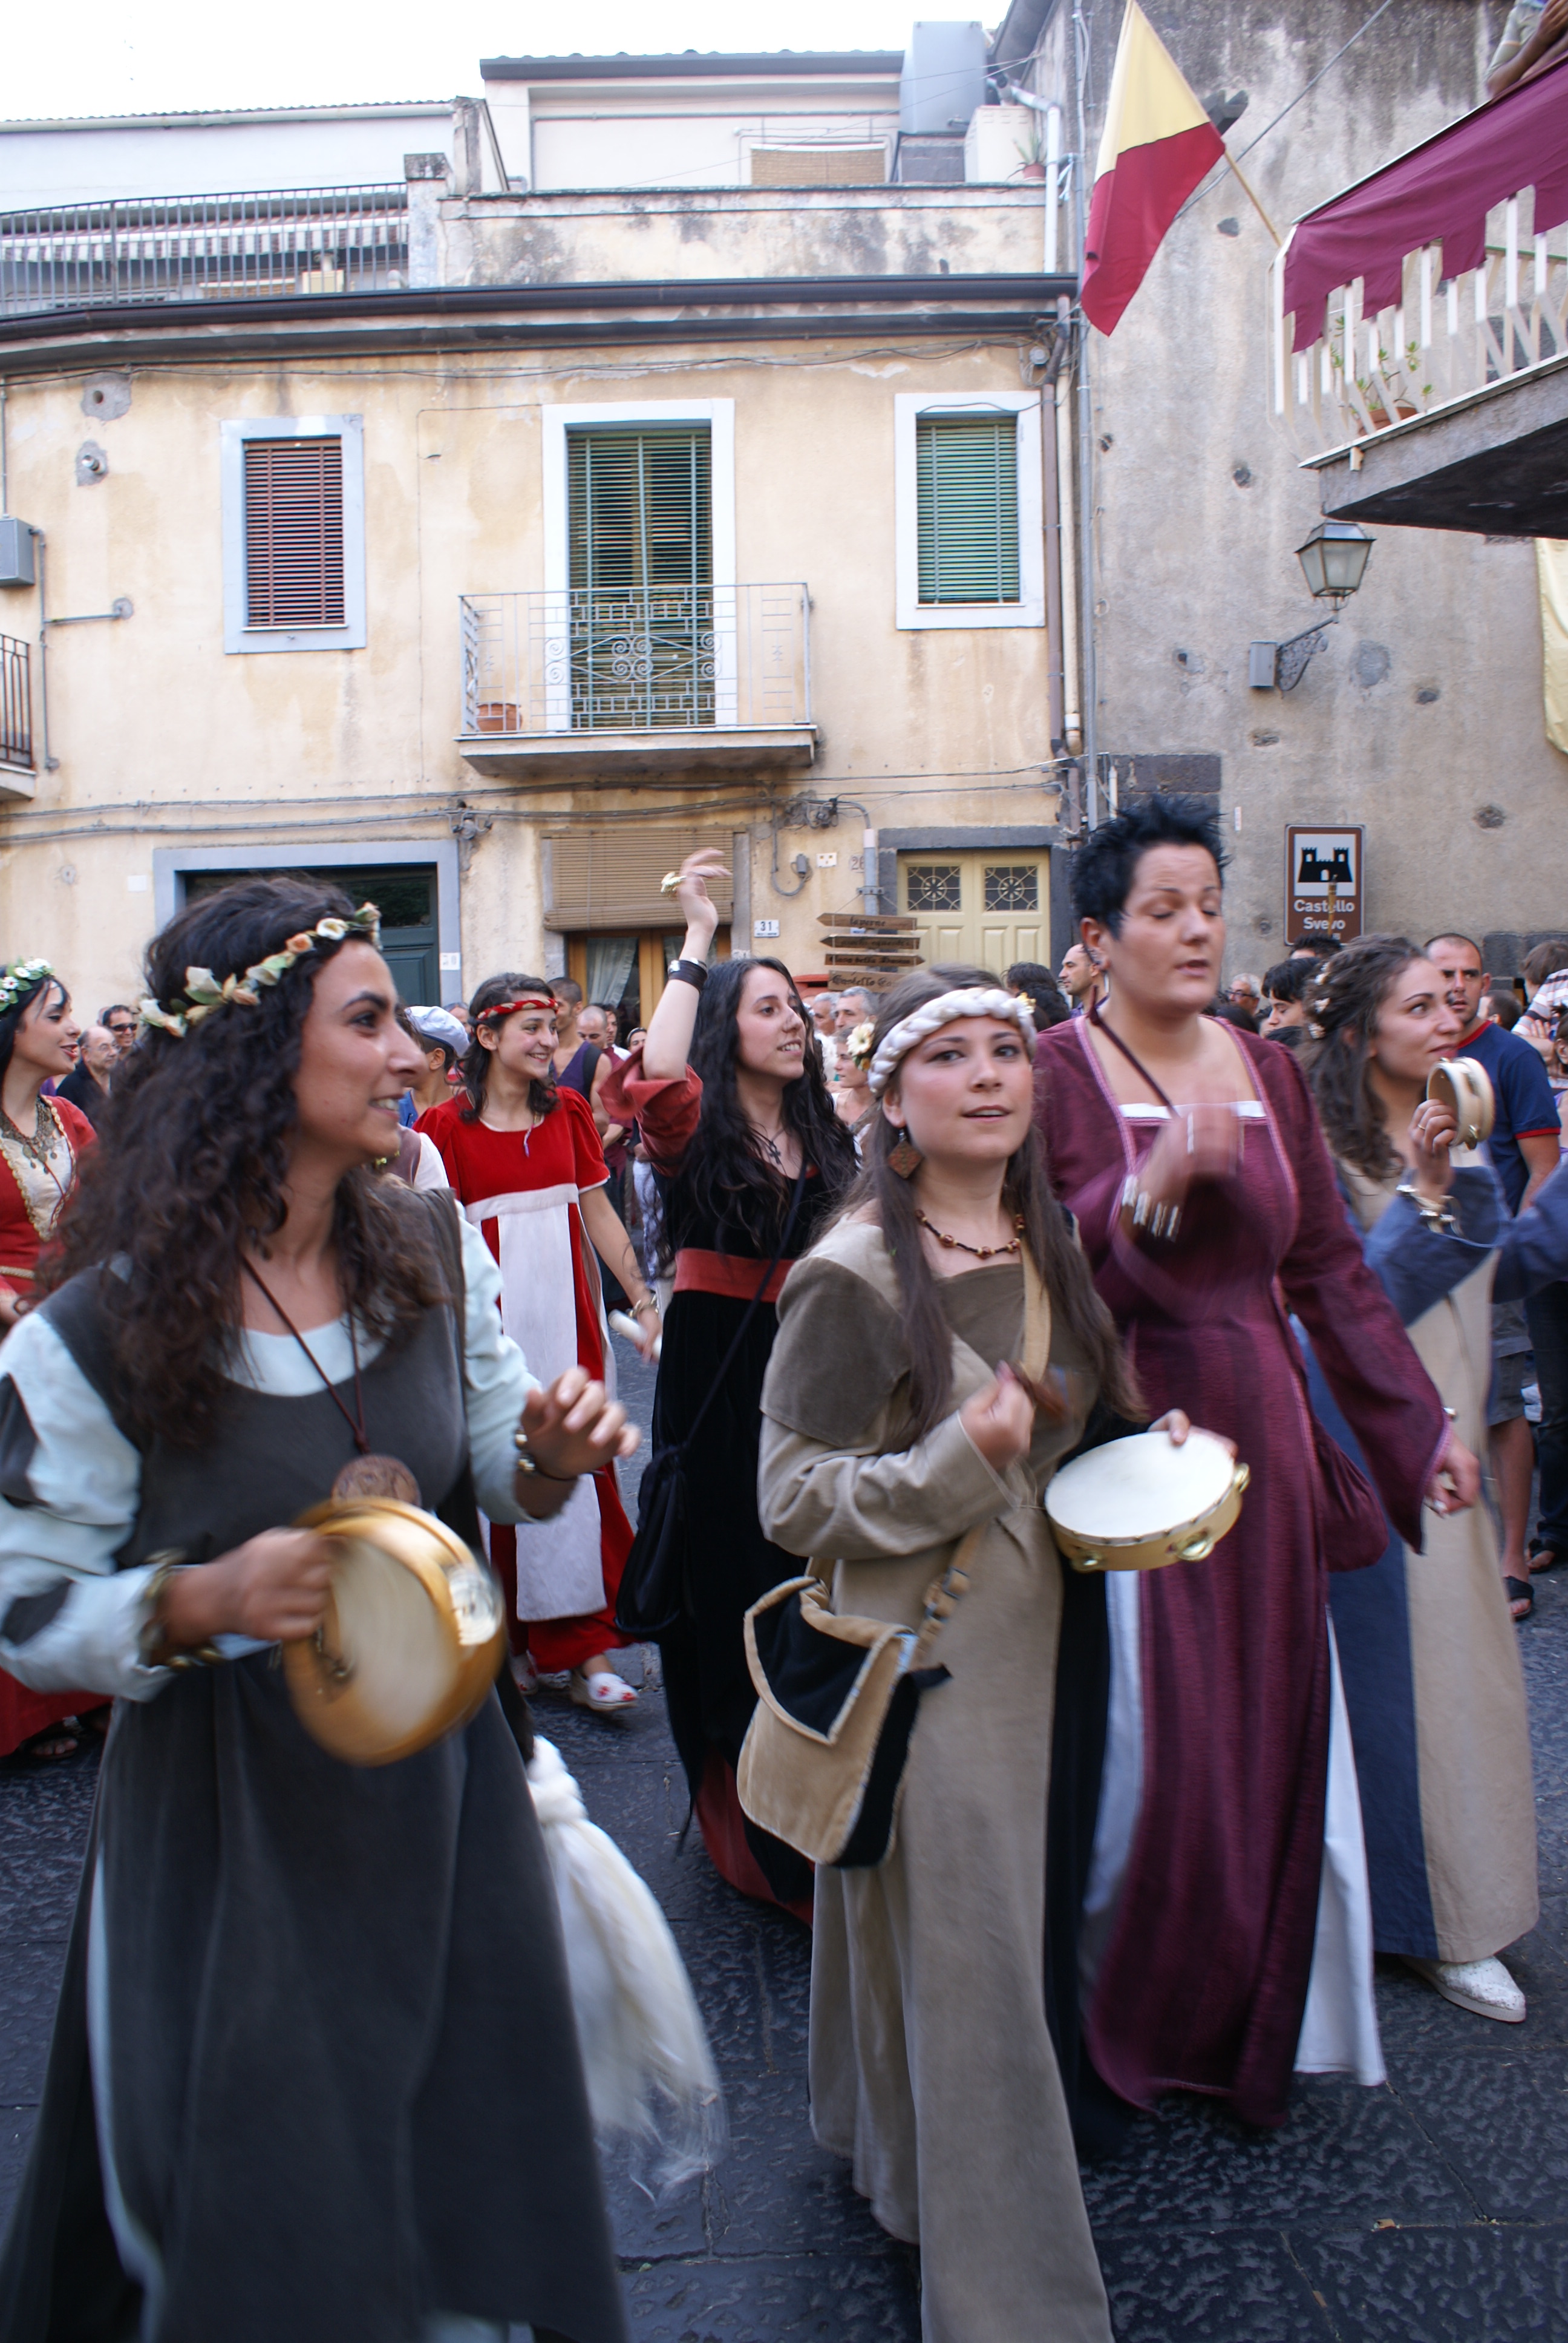 Festa Medievale di Randazzo (Ct). Damigelle.